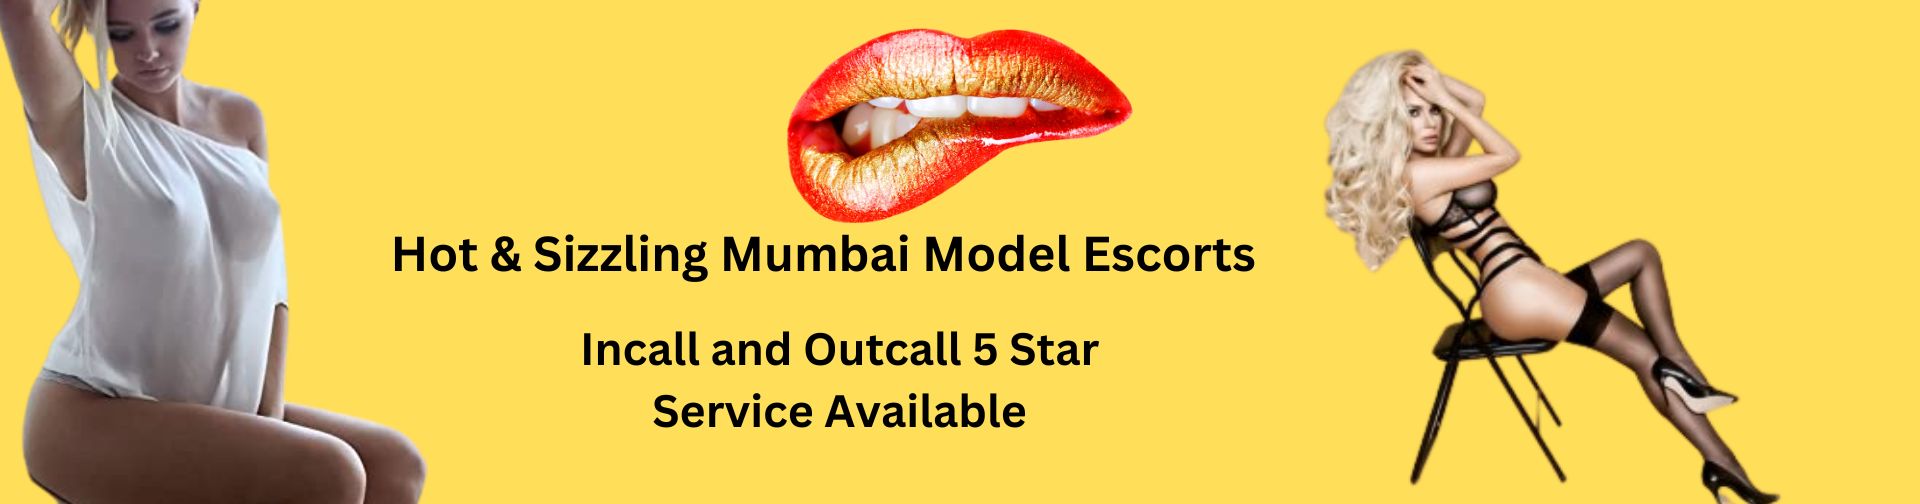 Mumbai call girls services